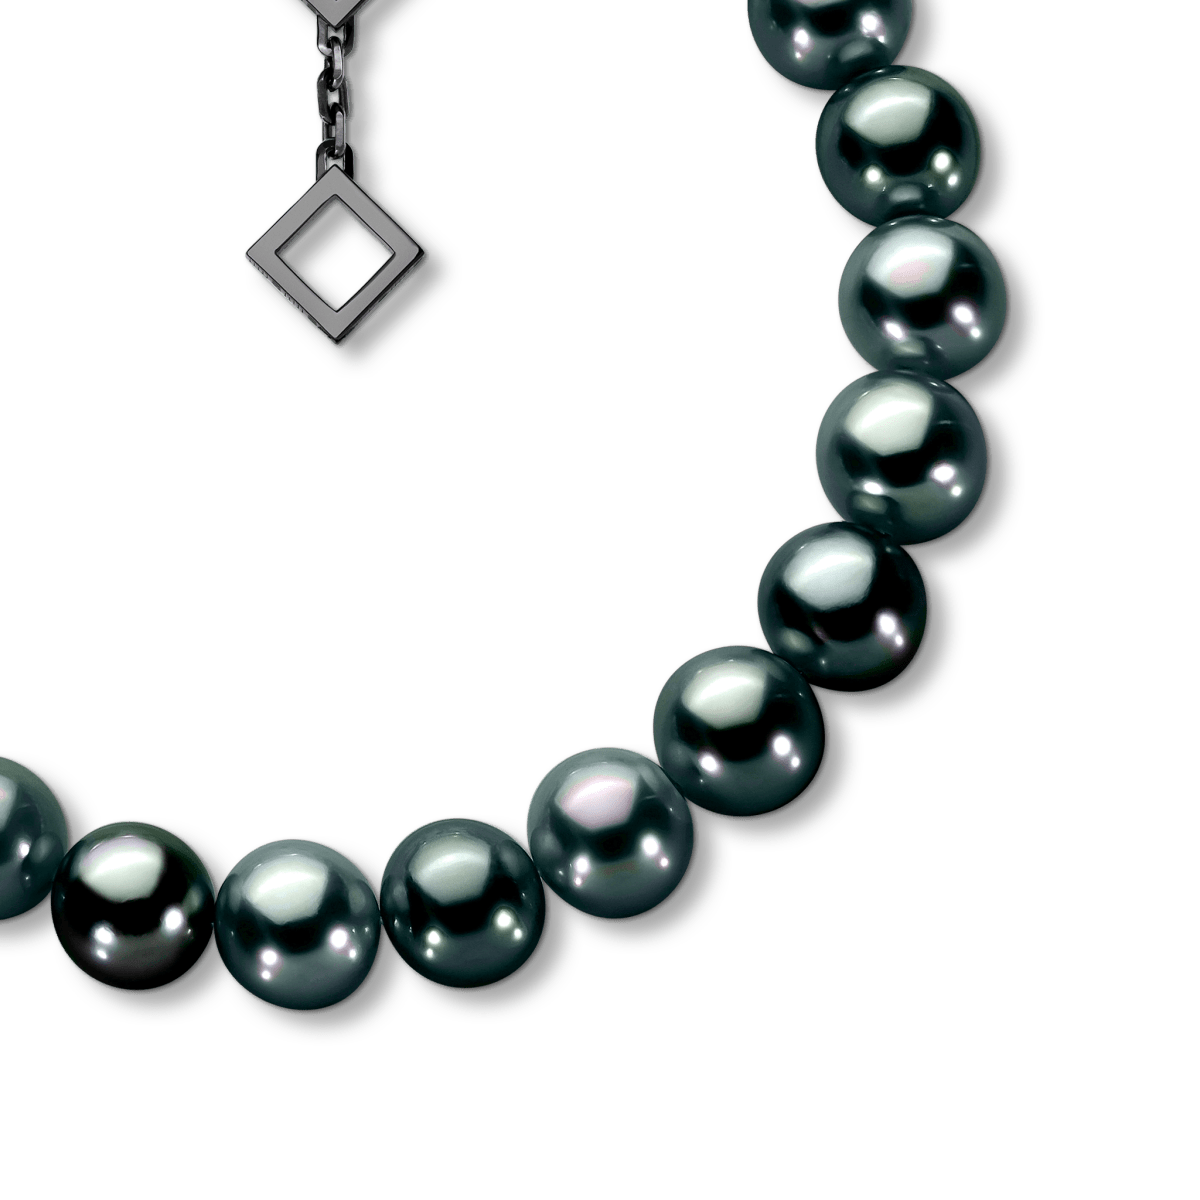 Pearl Skies Bracelet